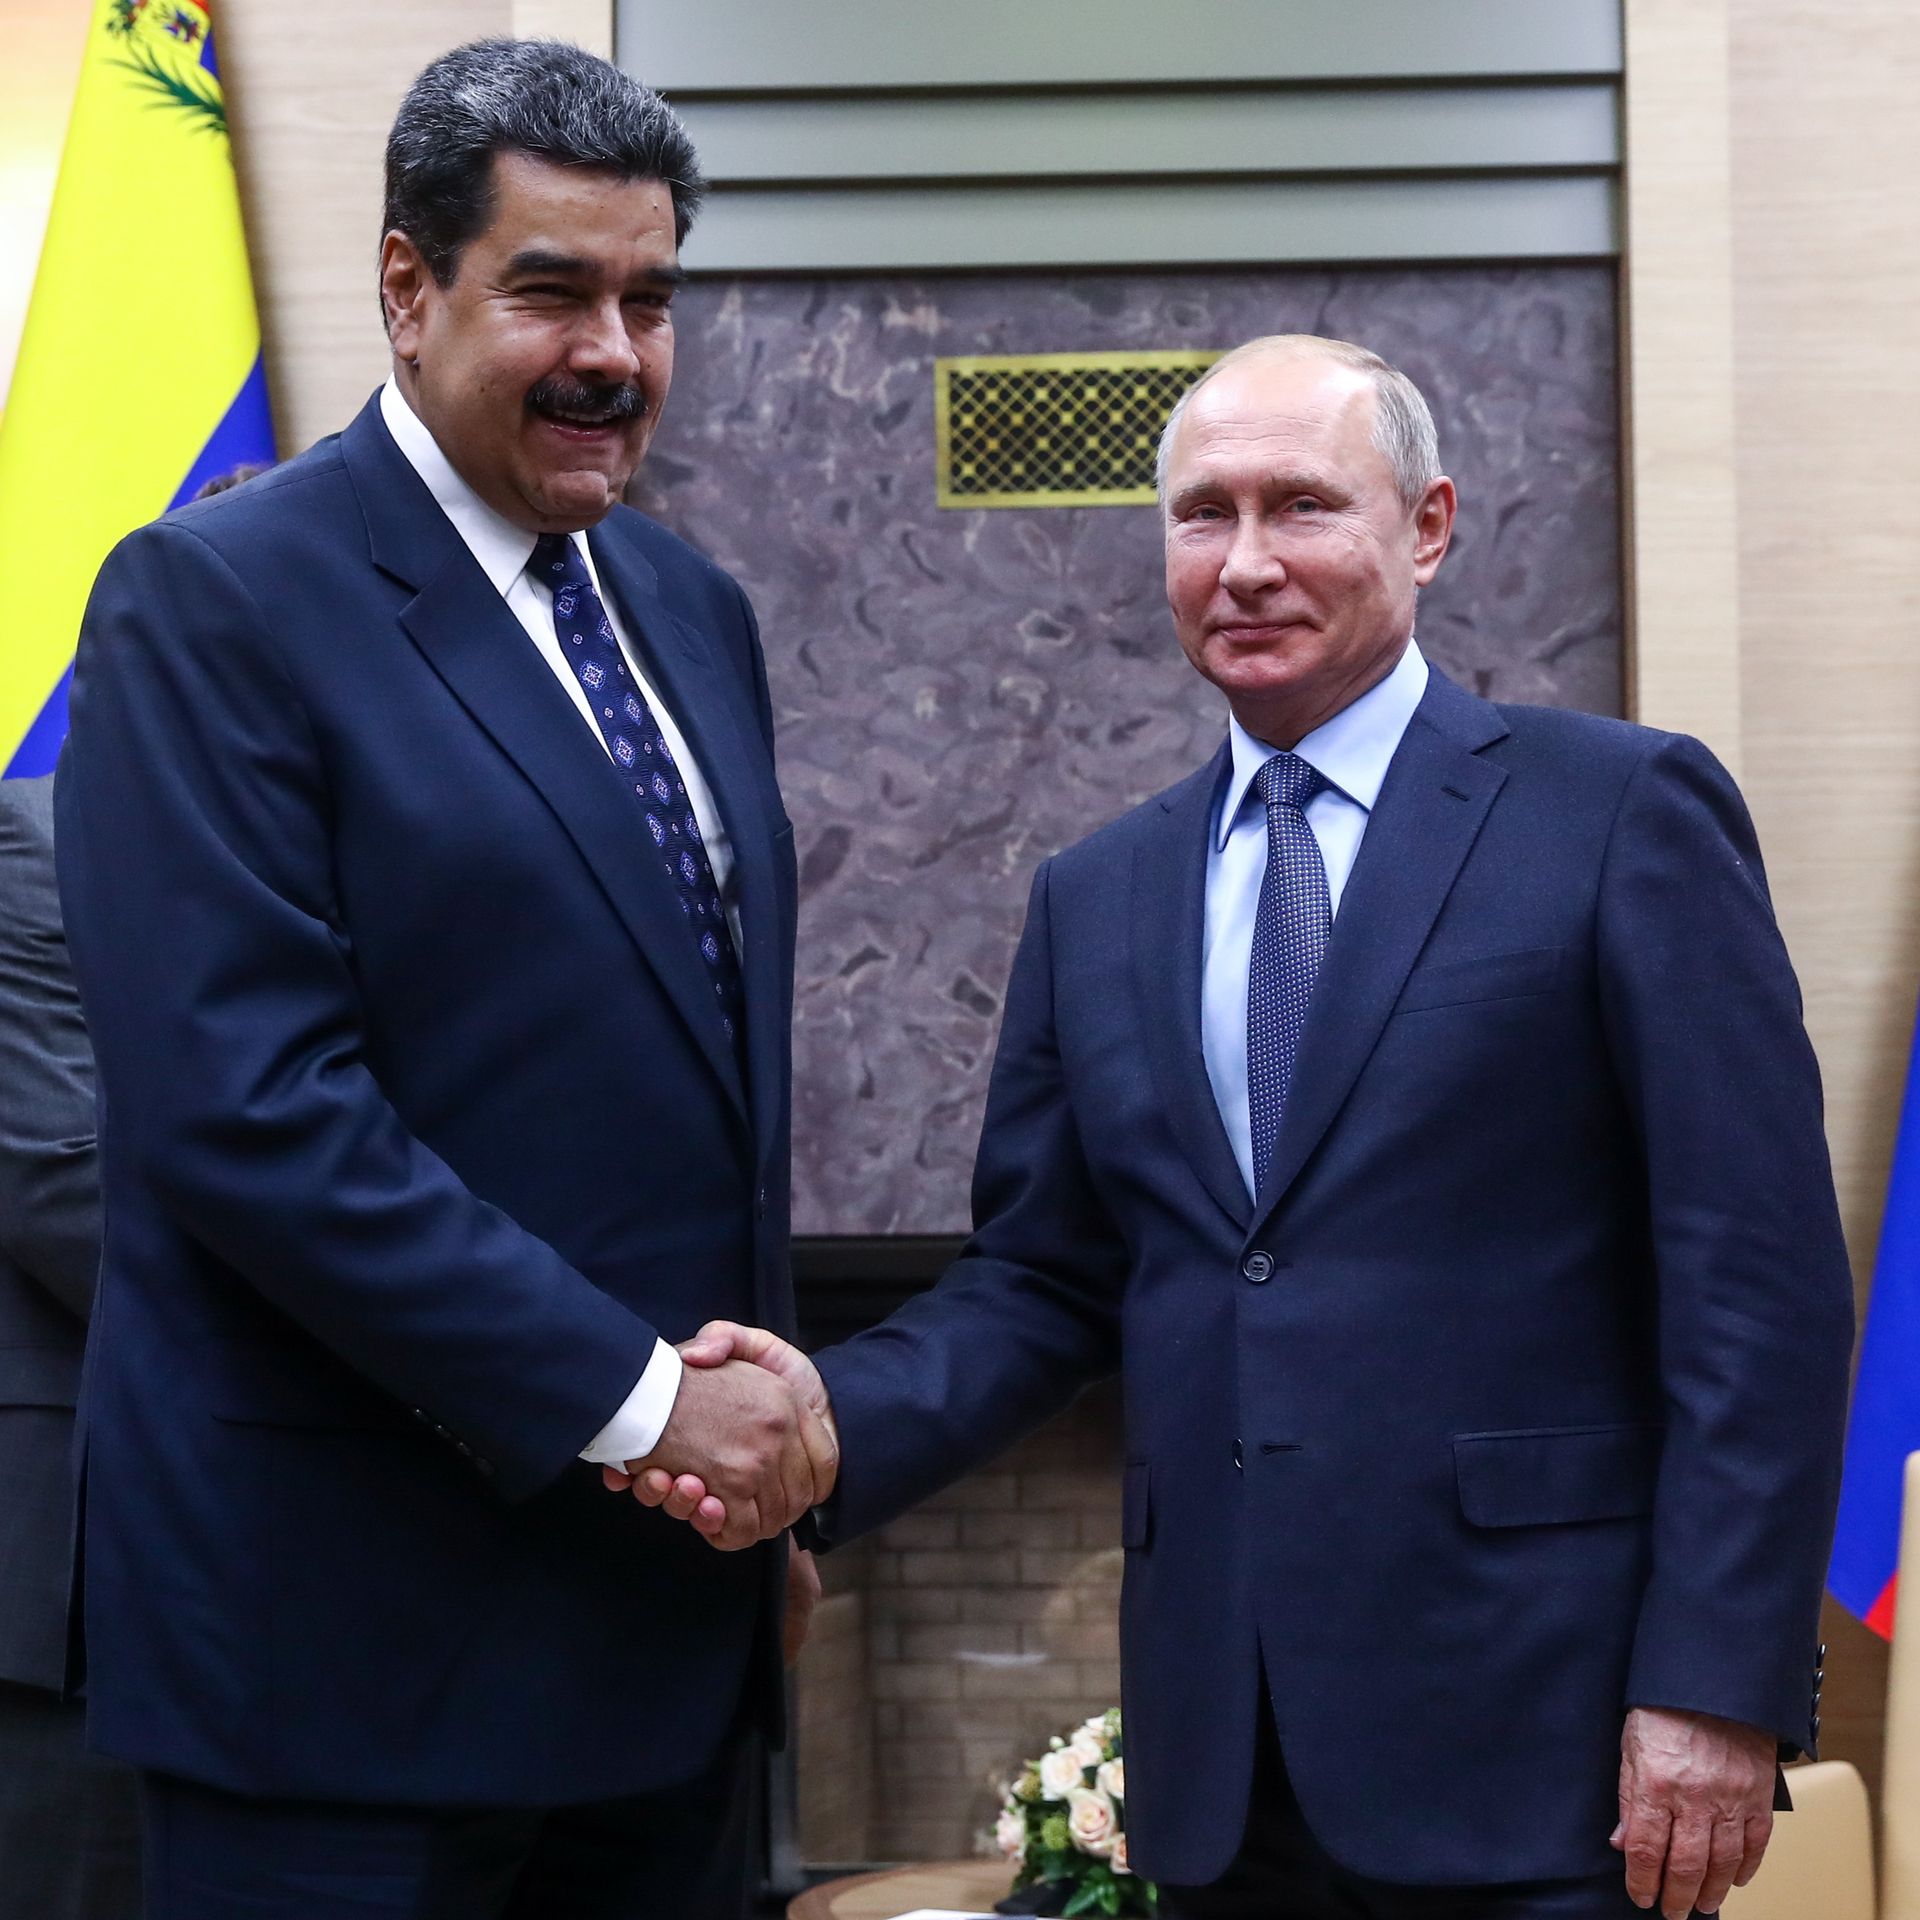 Nicolas Maduro and Vladimir Putin